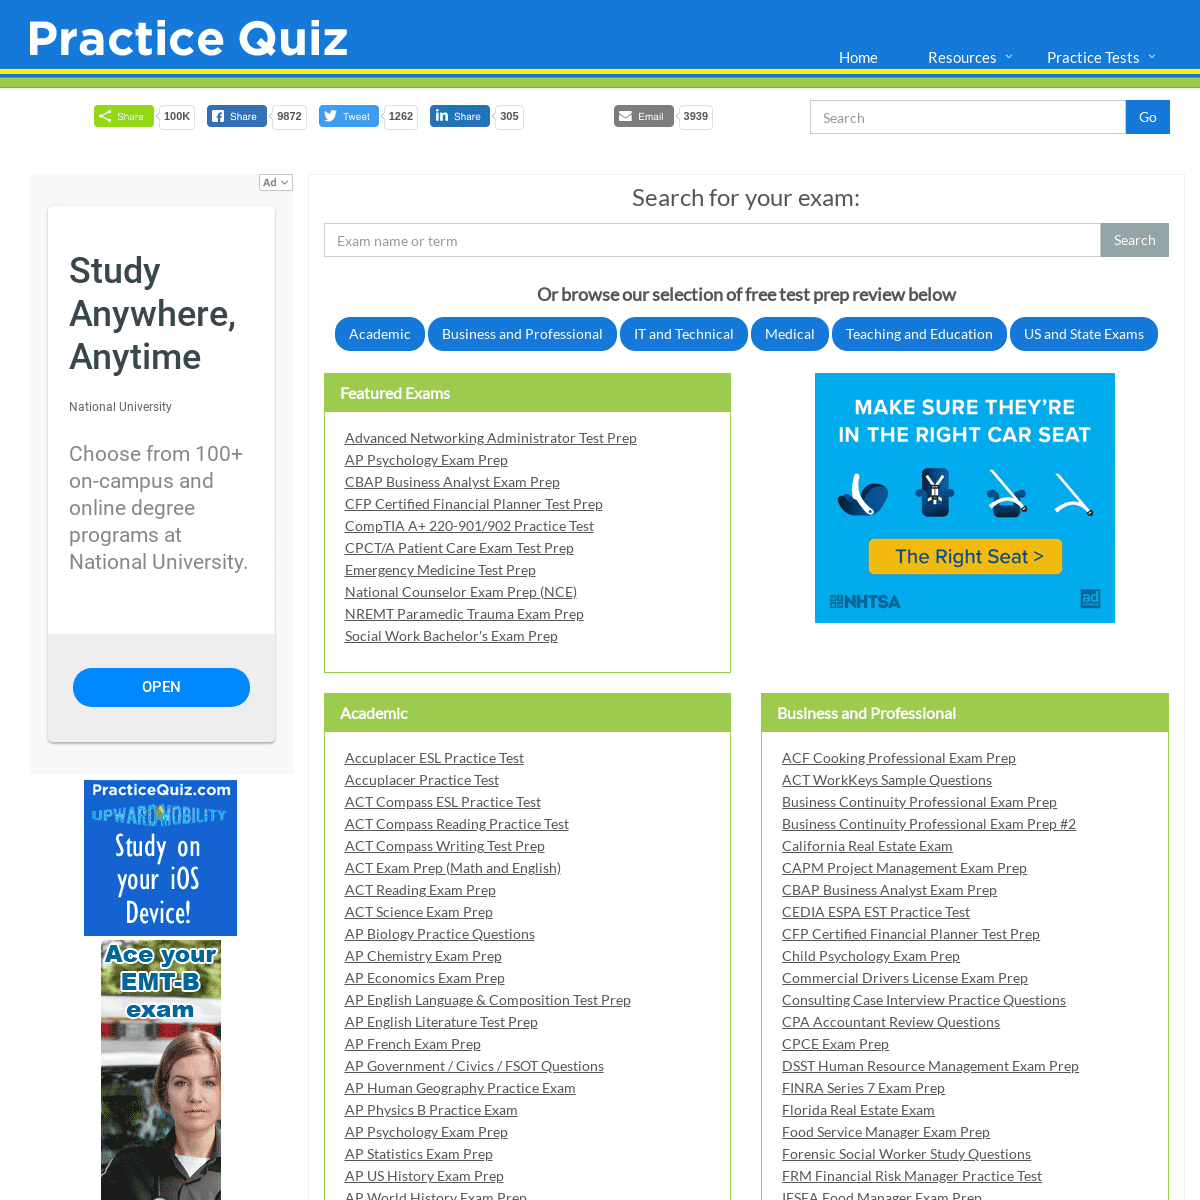 A complete backup of practicequiz.com